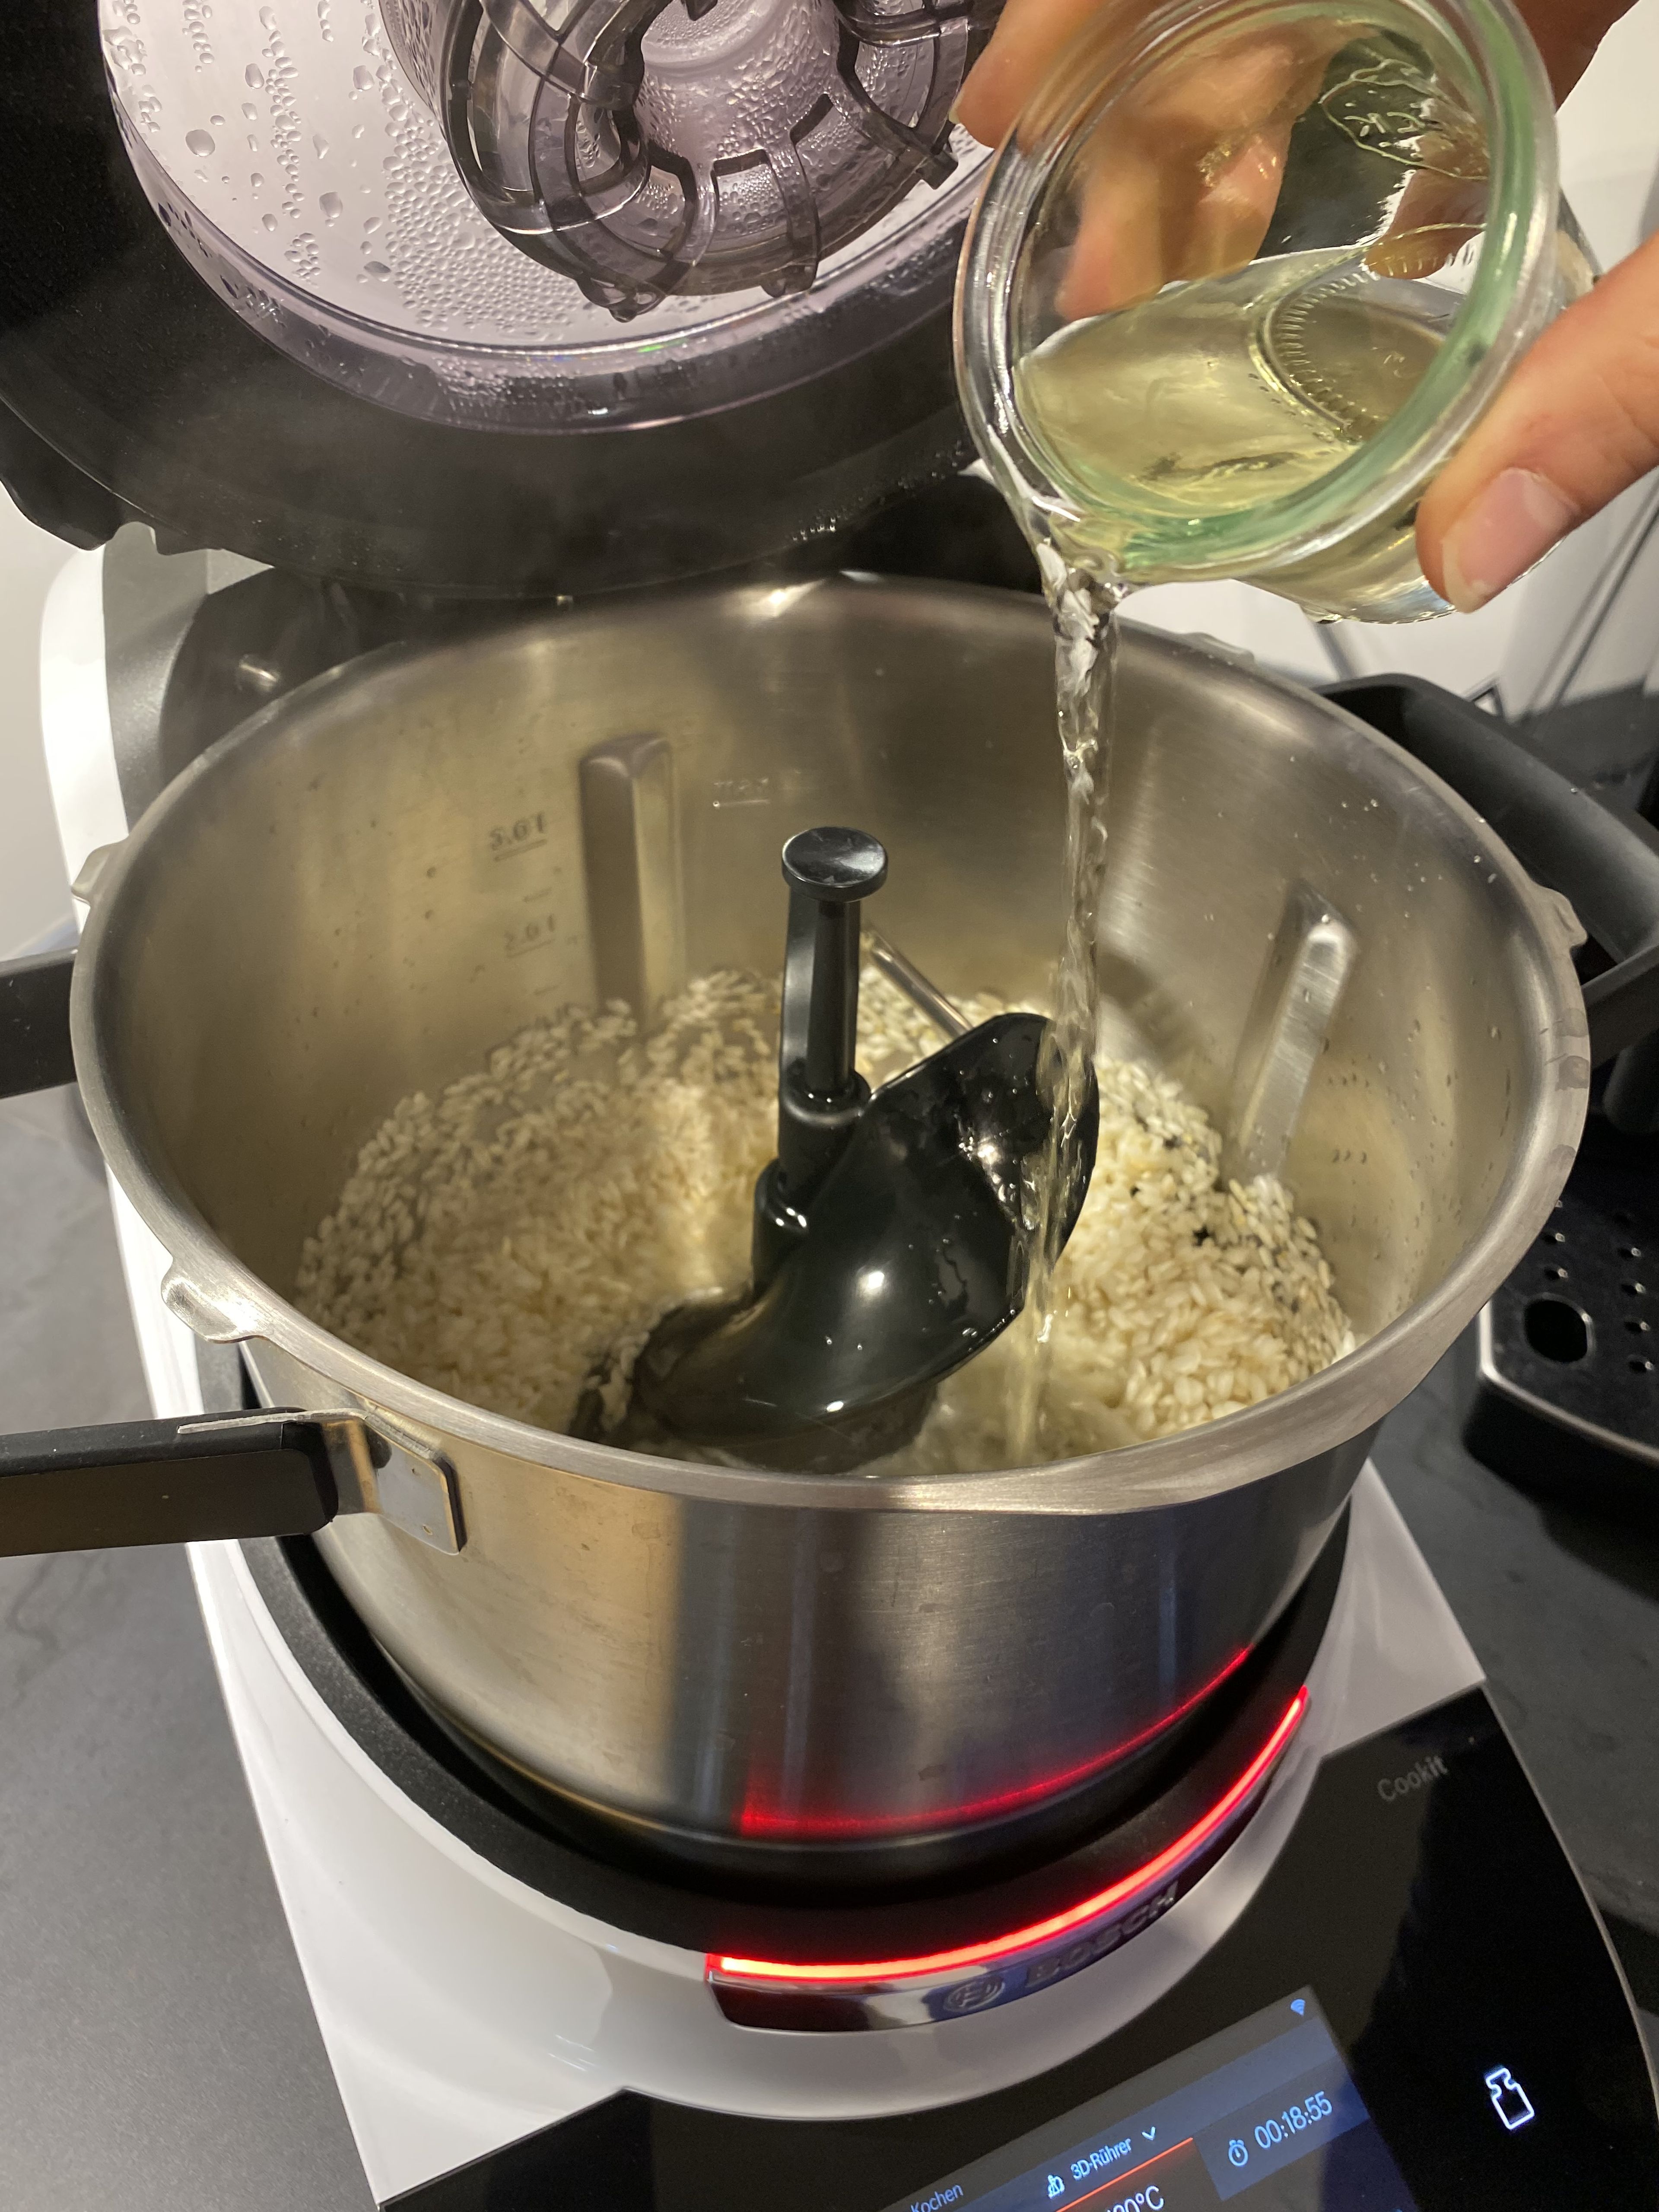 Anschließend wird der Risottoreis mit Weißwein abgelöscht und der Deckel danach wieder geschlossen, damit der Reis weitergaren kann (3D-Rührer l Stufe 3 l 110°C l ca. 20 Min.). Die Garzeit kann abhängig von der Reissorte variieren.